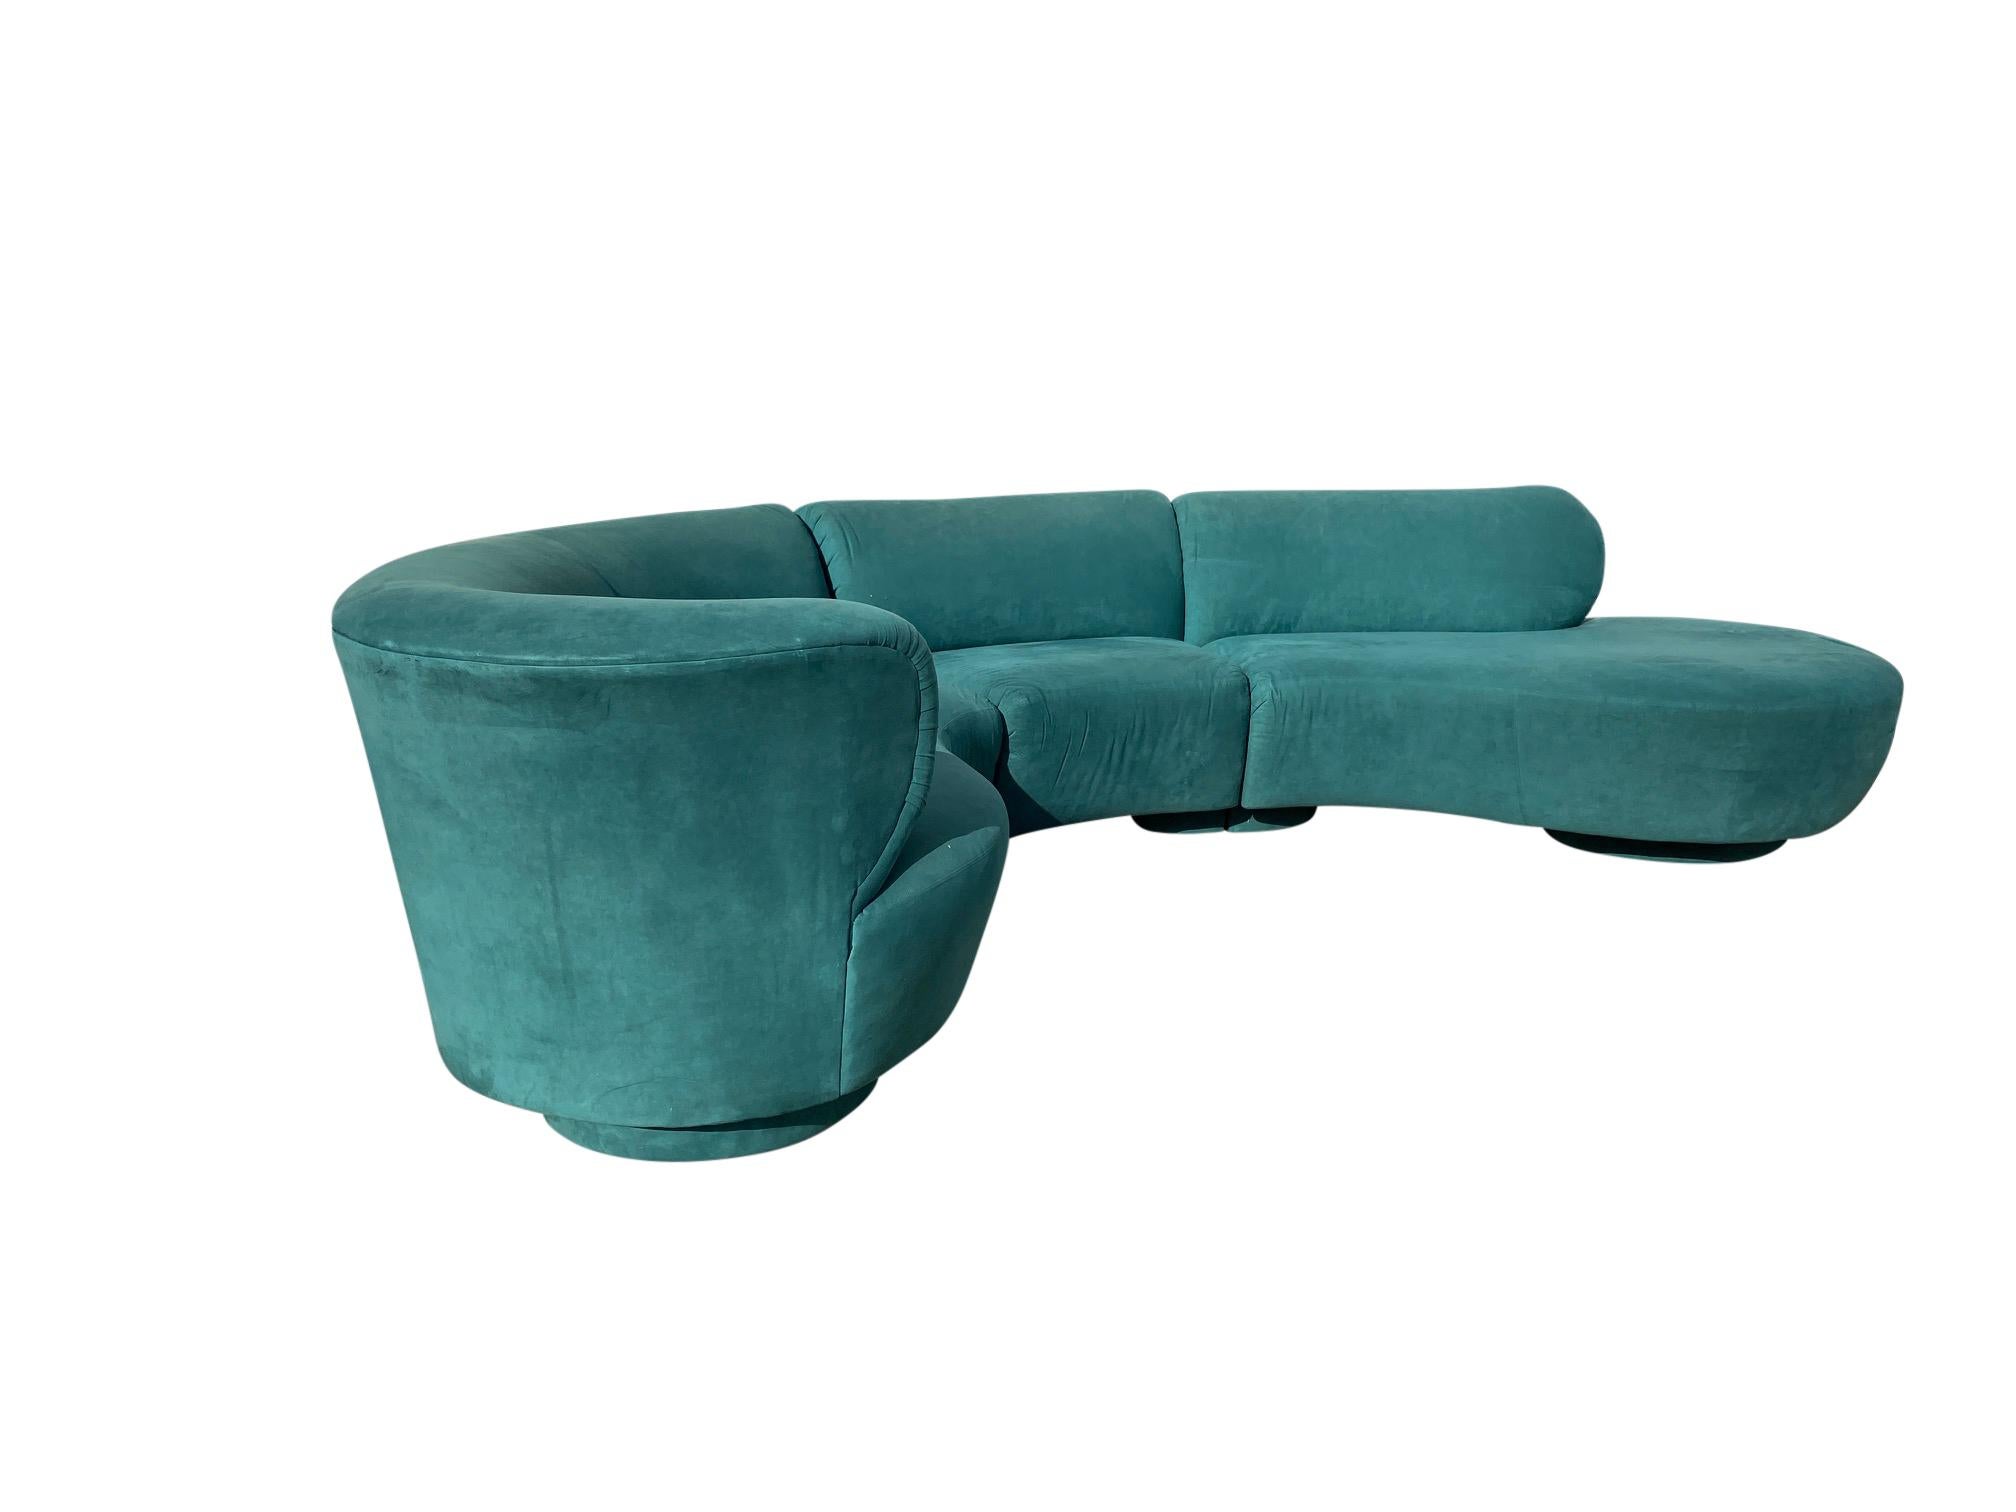 Vladimir Kagan curved cloud Sofa, 3 piece sectional.